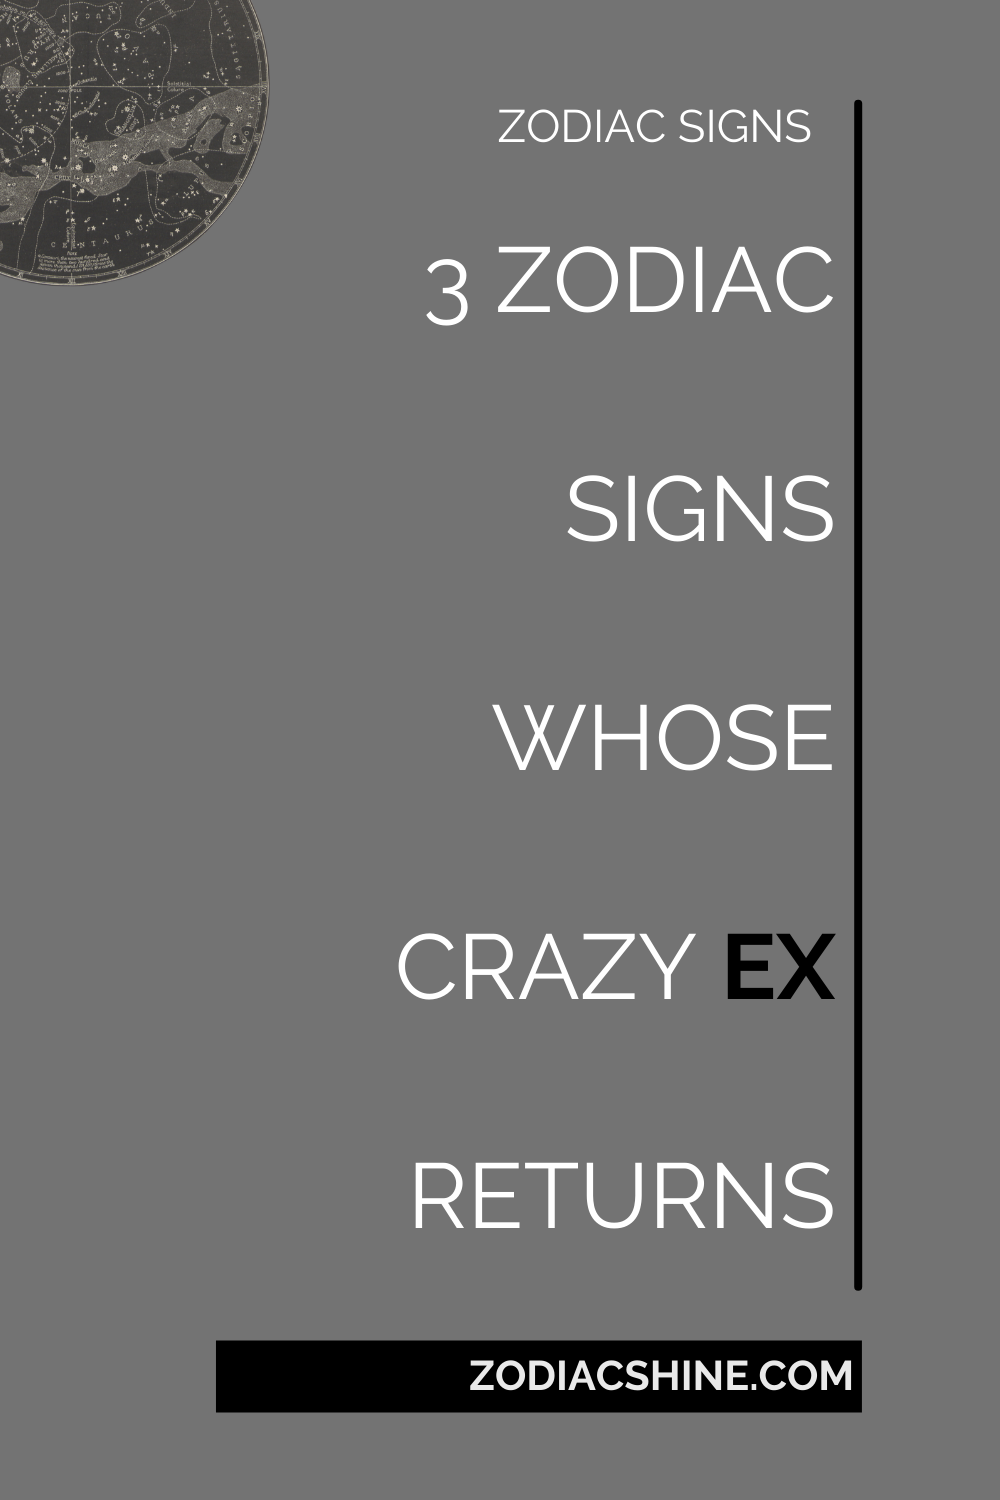 3 ZODIAC SIGNS WHOSE CRAZY EX RETURNS